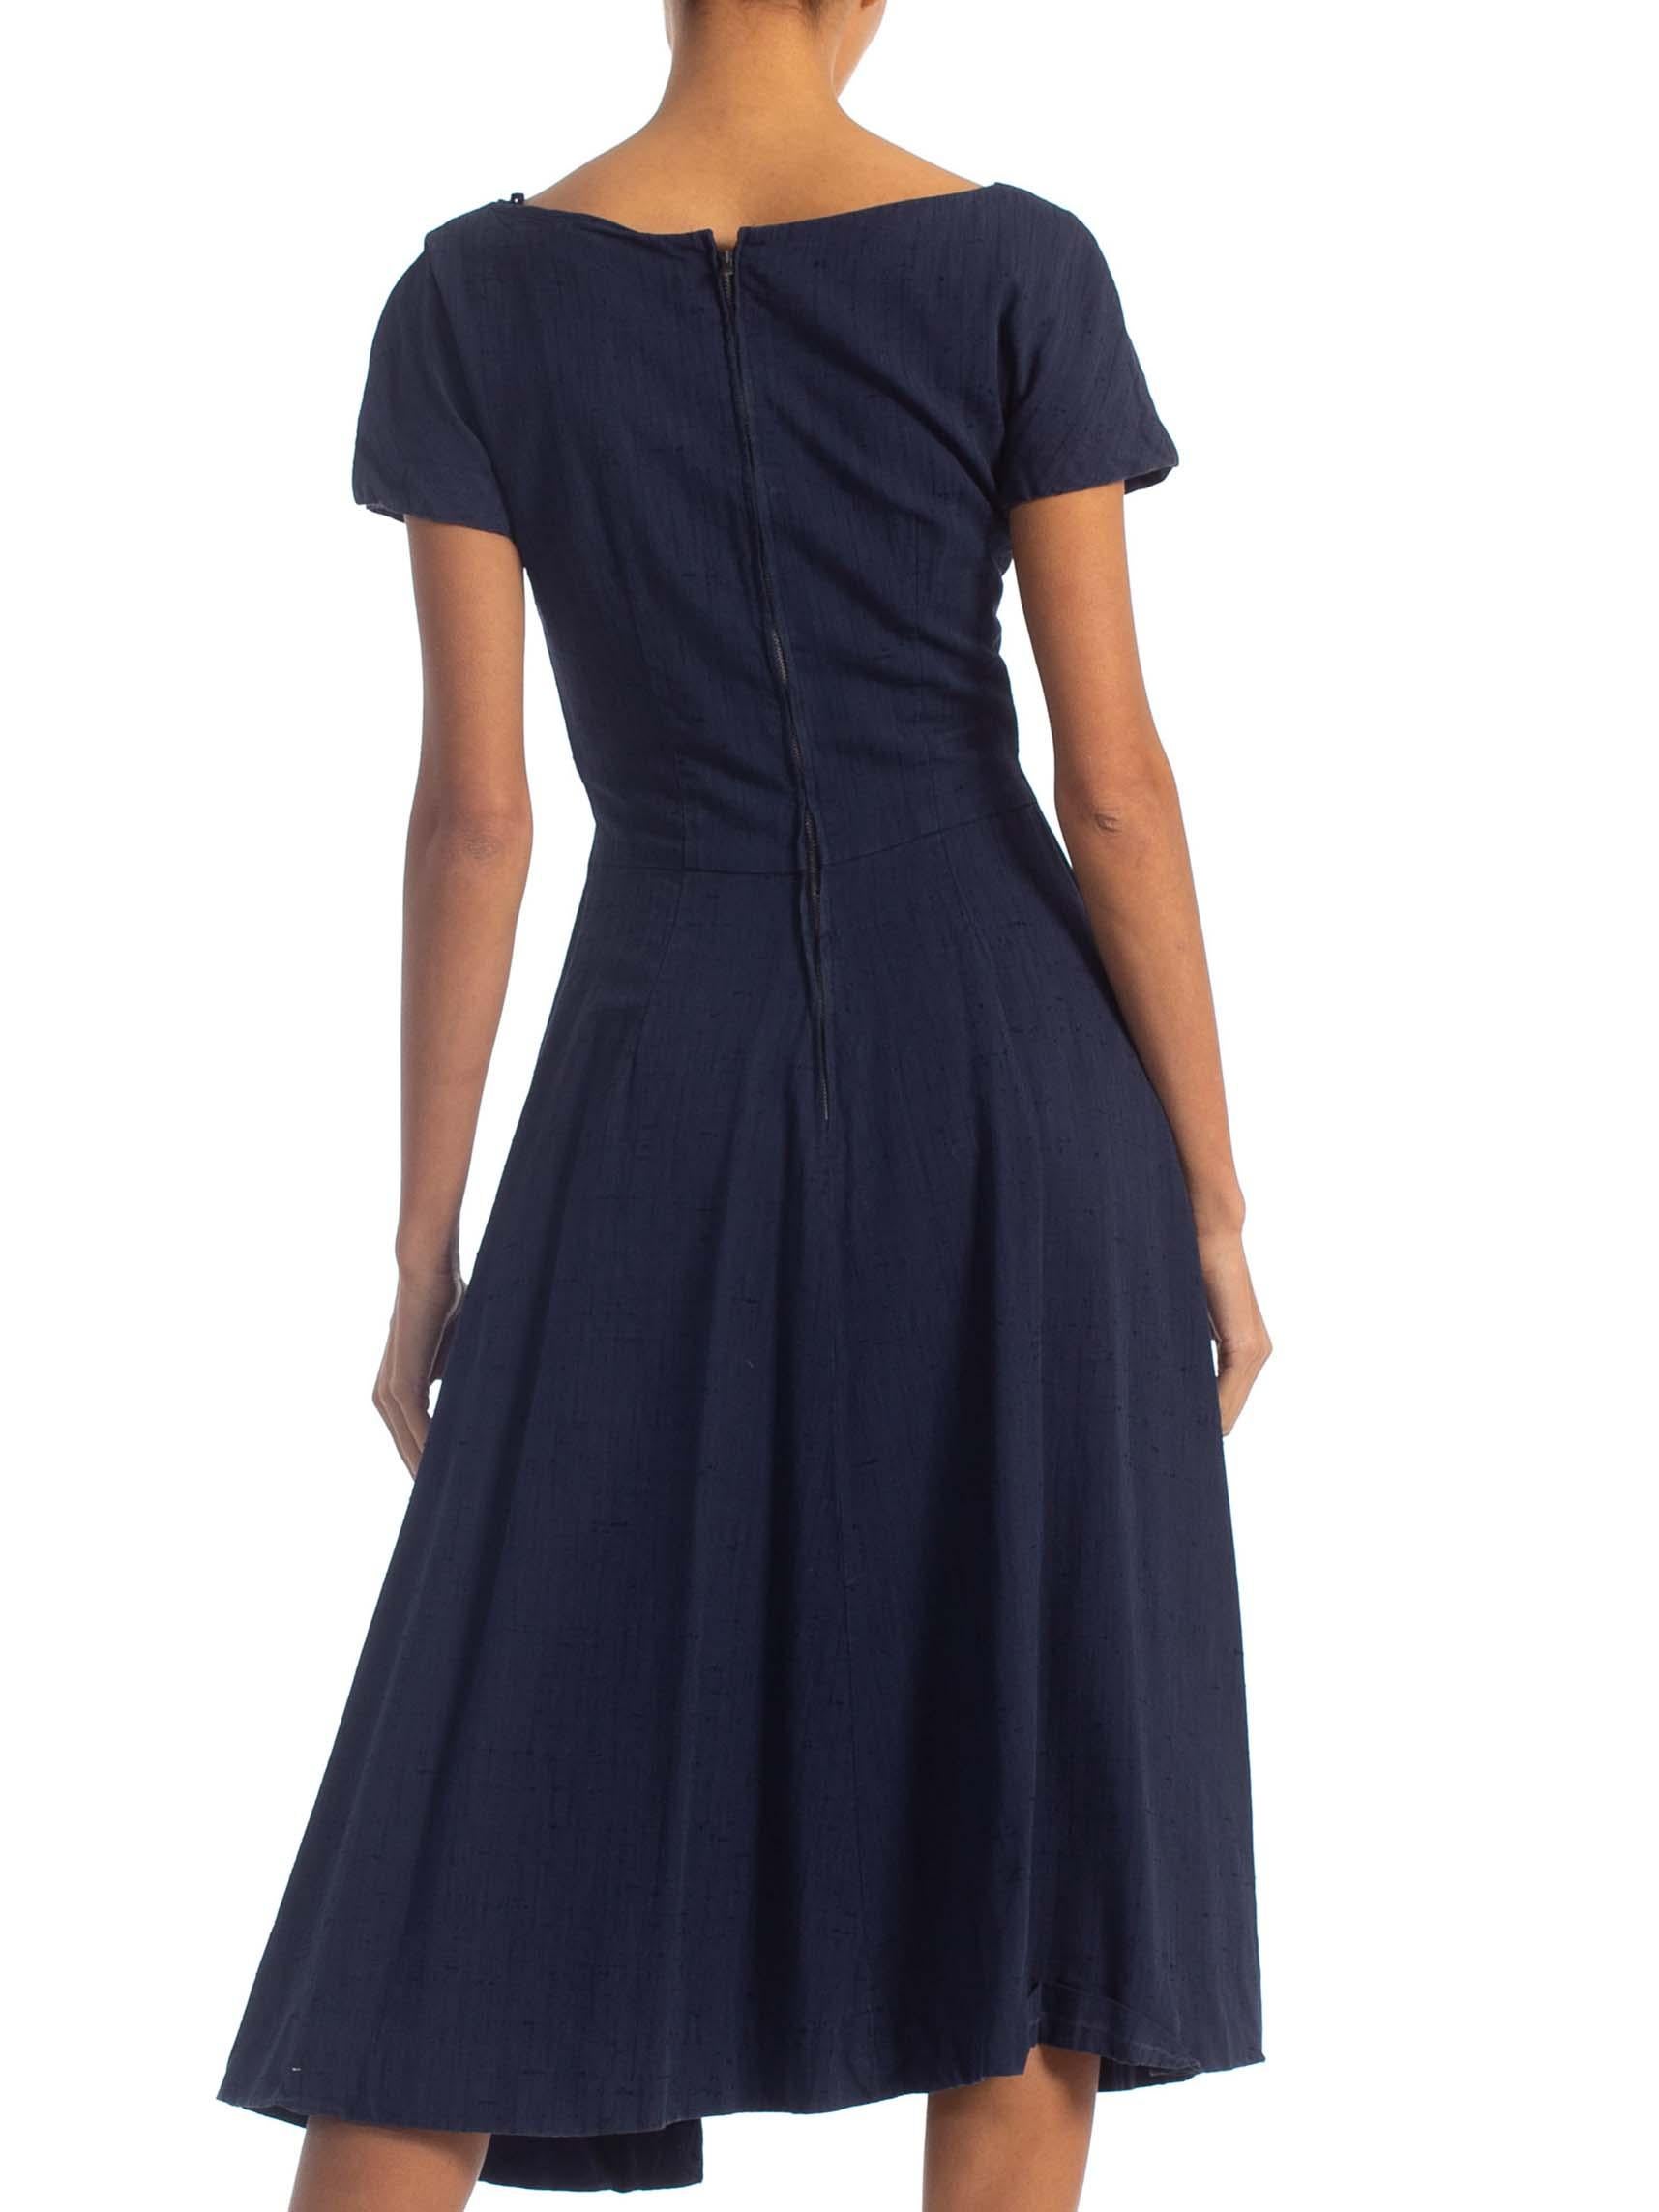 1950S SUZY PERETTE Navy Blue Cotton Blend Asymmetrical Drape Fit & Flare Dress 3